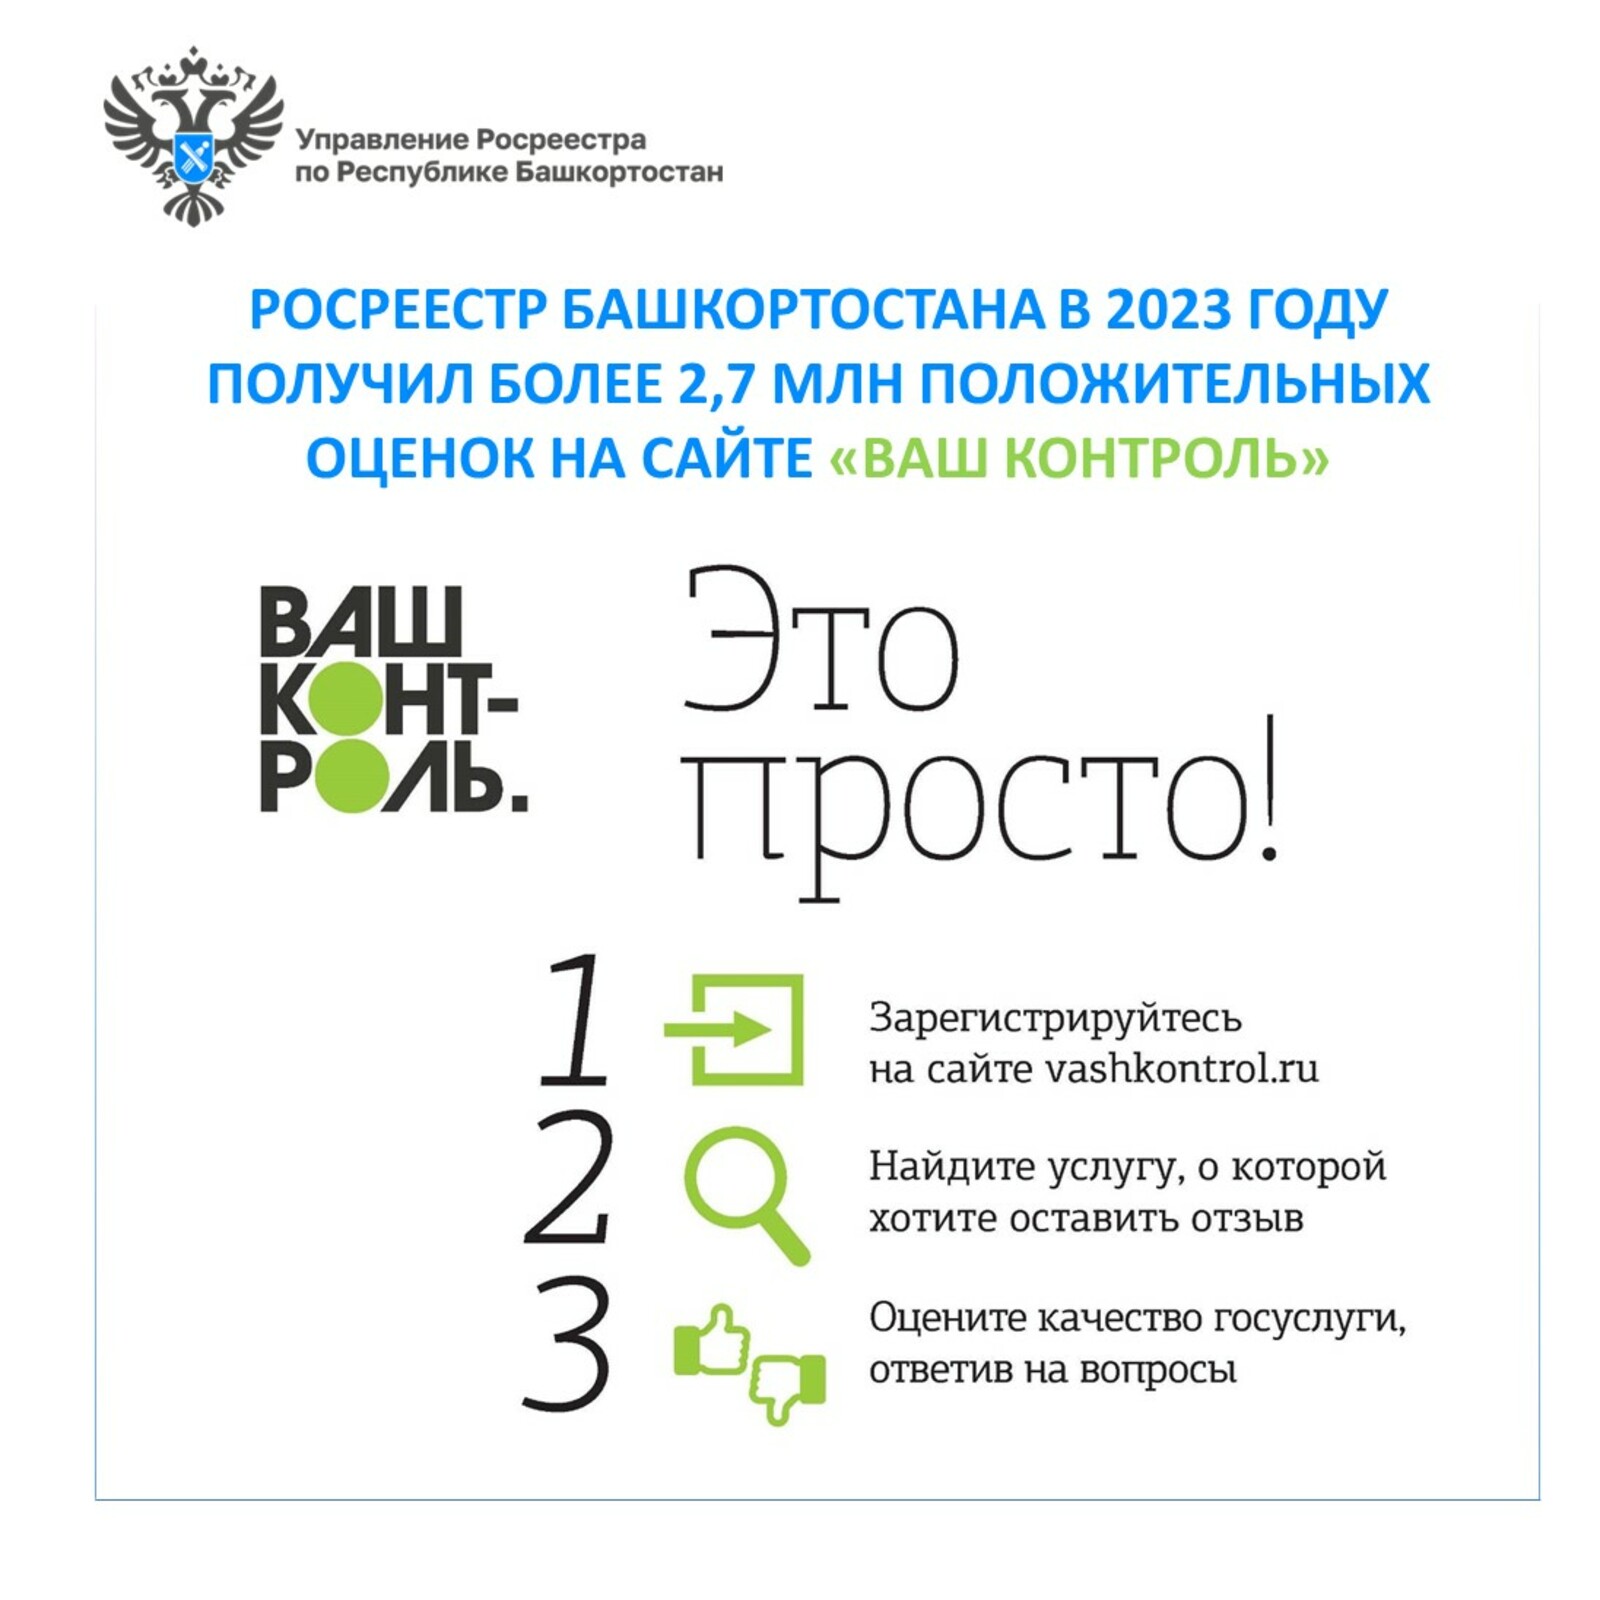 Росреестр Башкортостана в 2023 году получил более 2,7 млн положительных оценок на сайте «Ваш контроль»